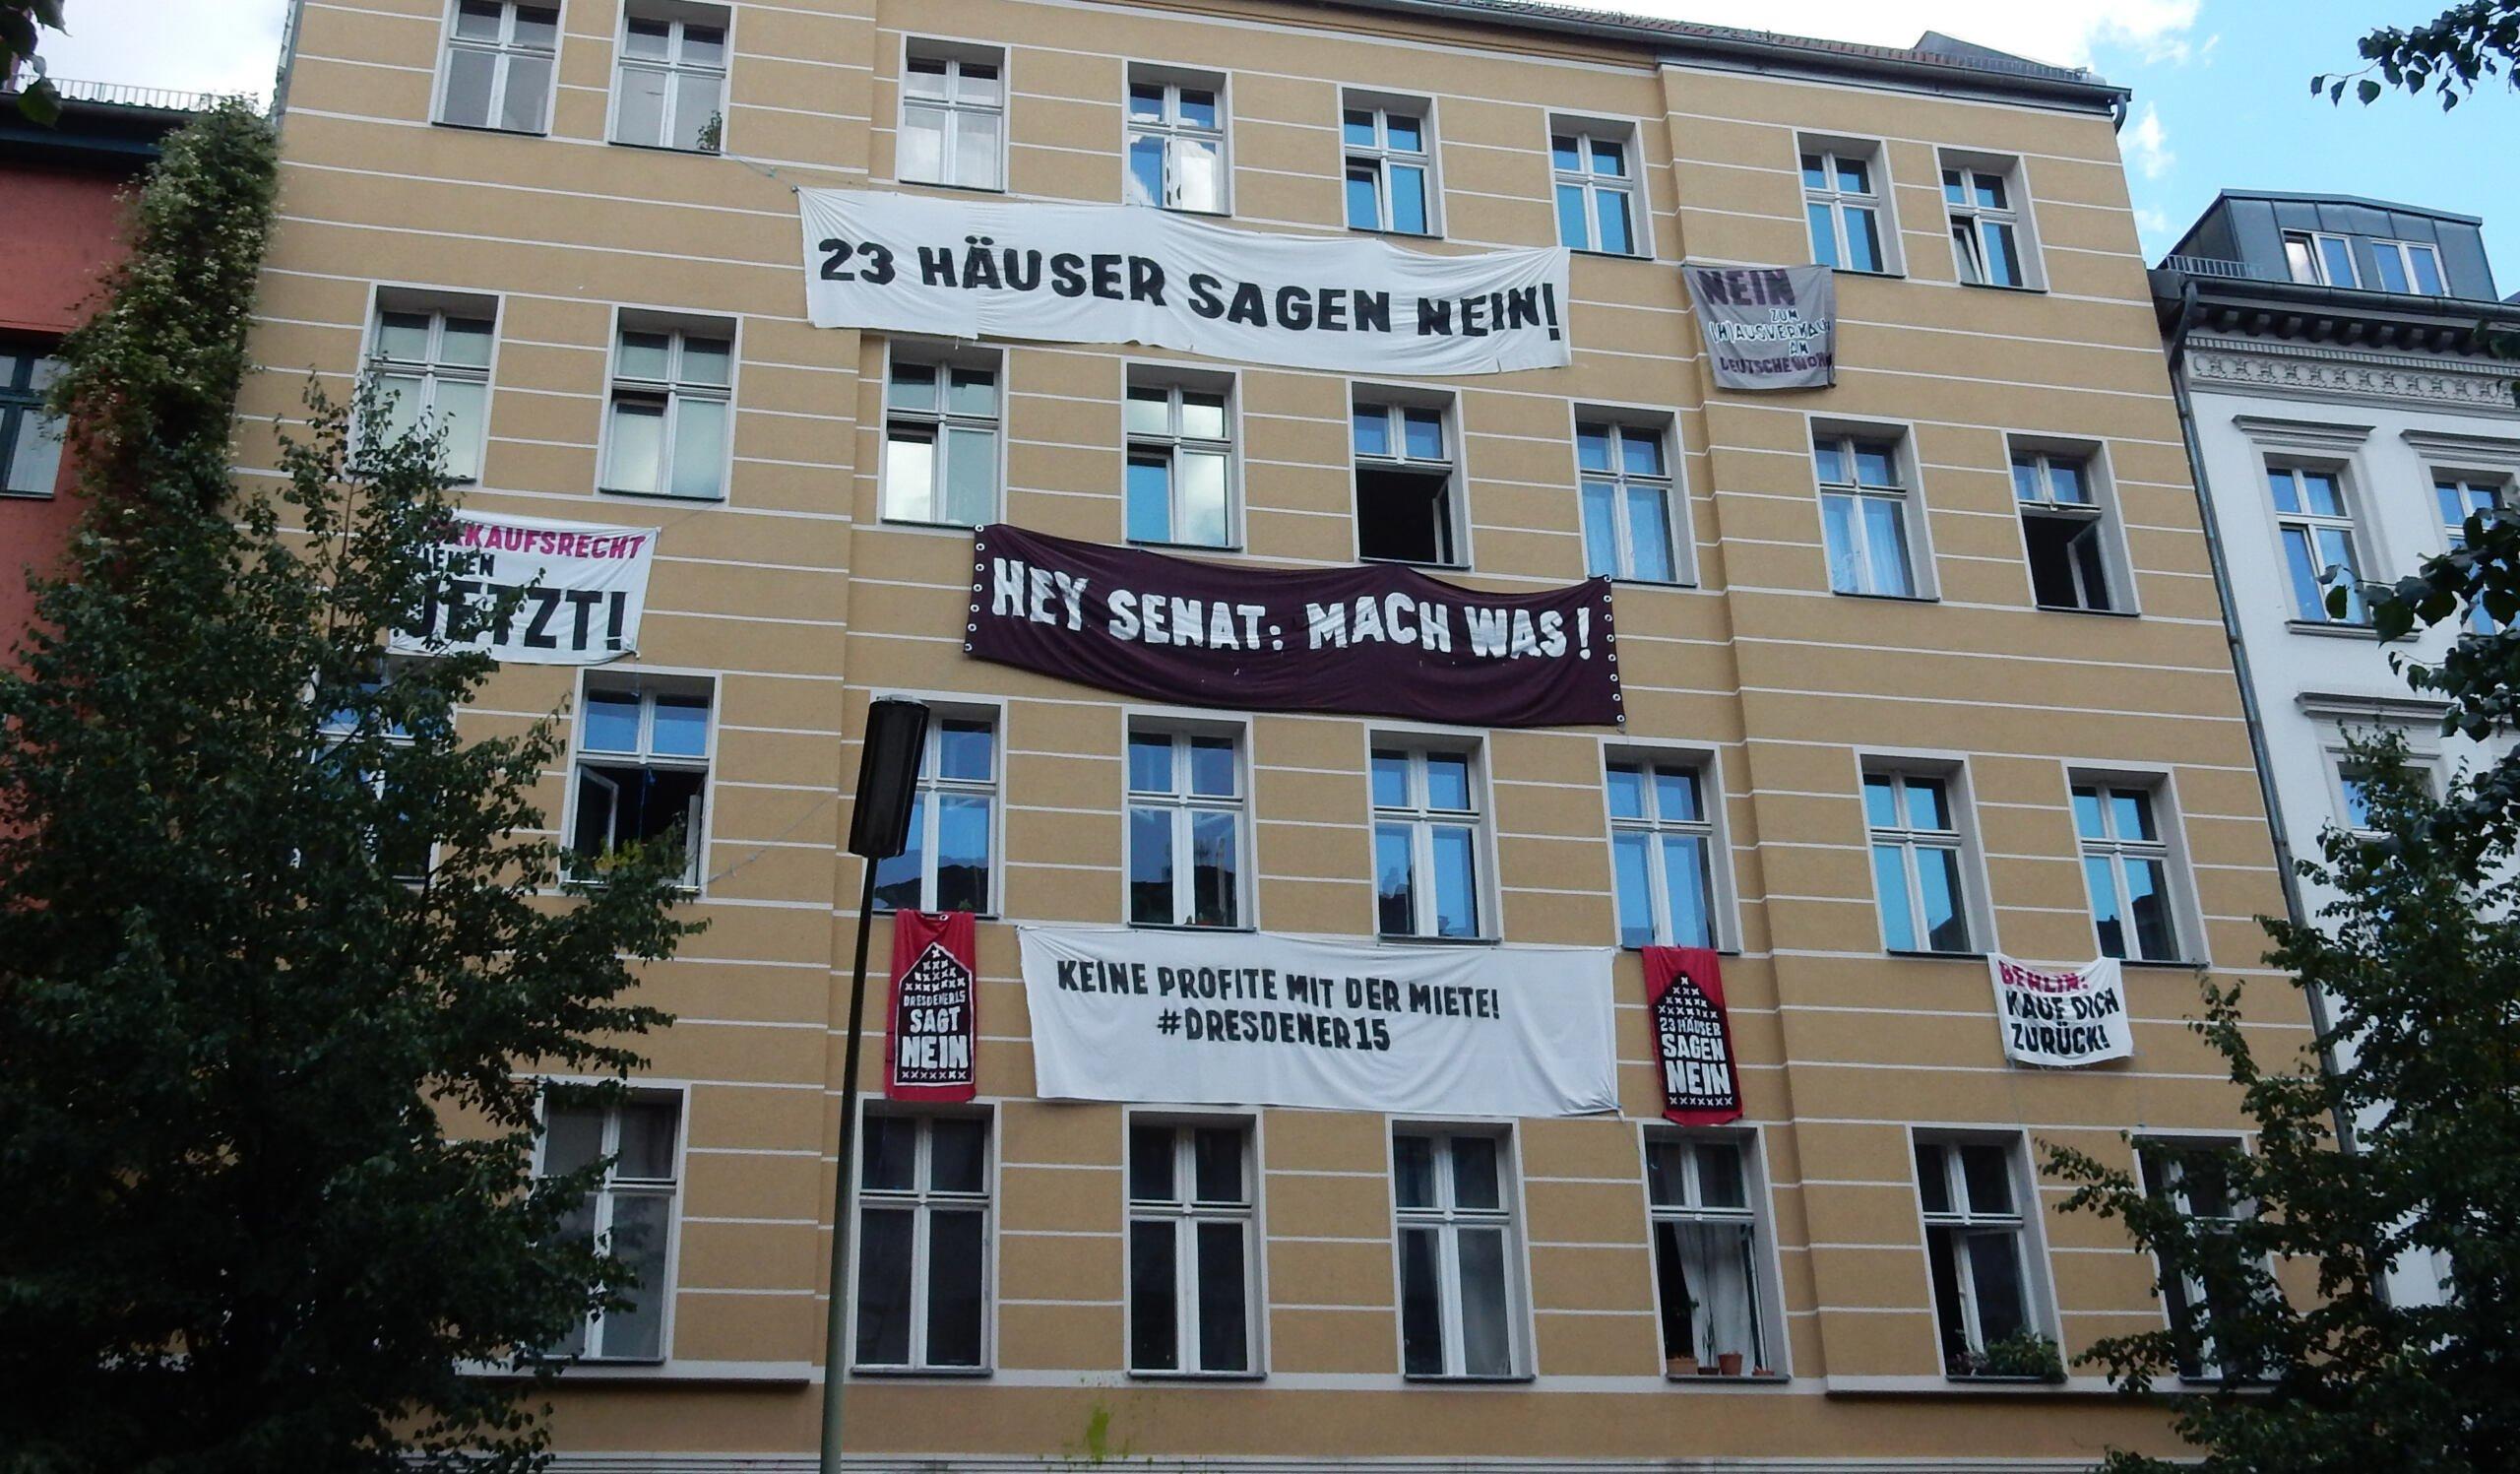 Budynek w Niemczech obwieszony transparentami